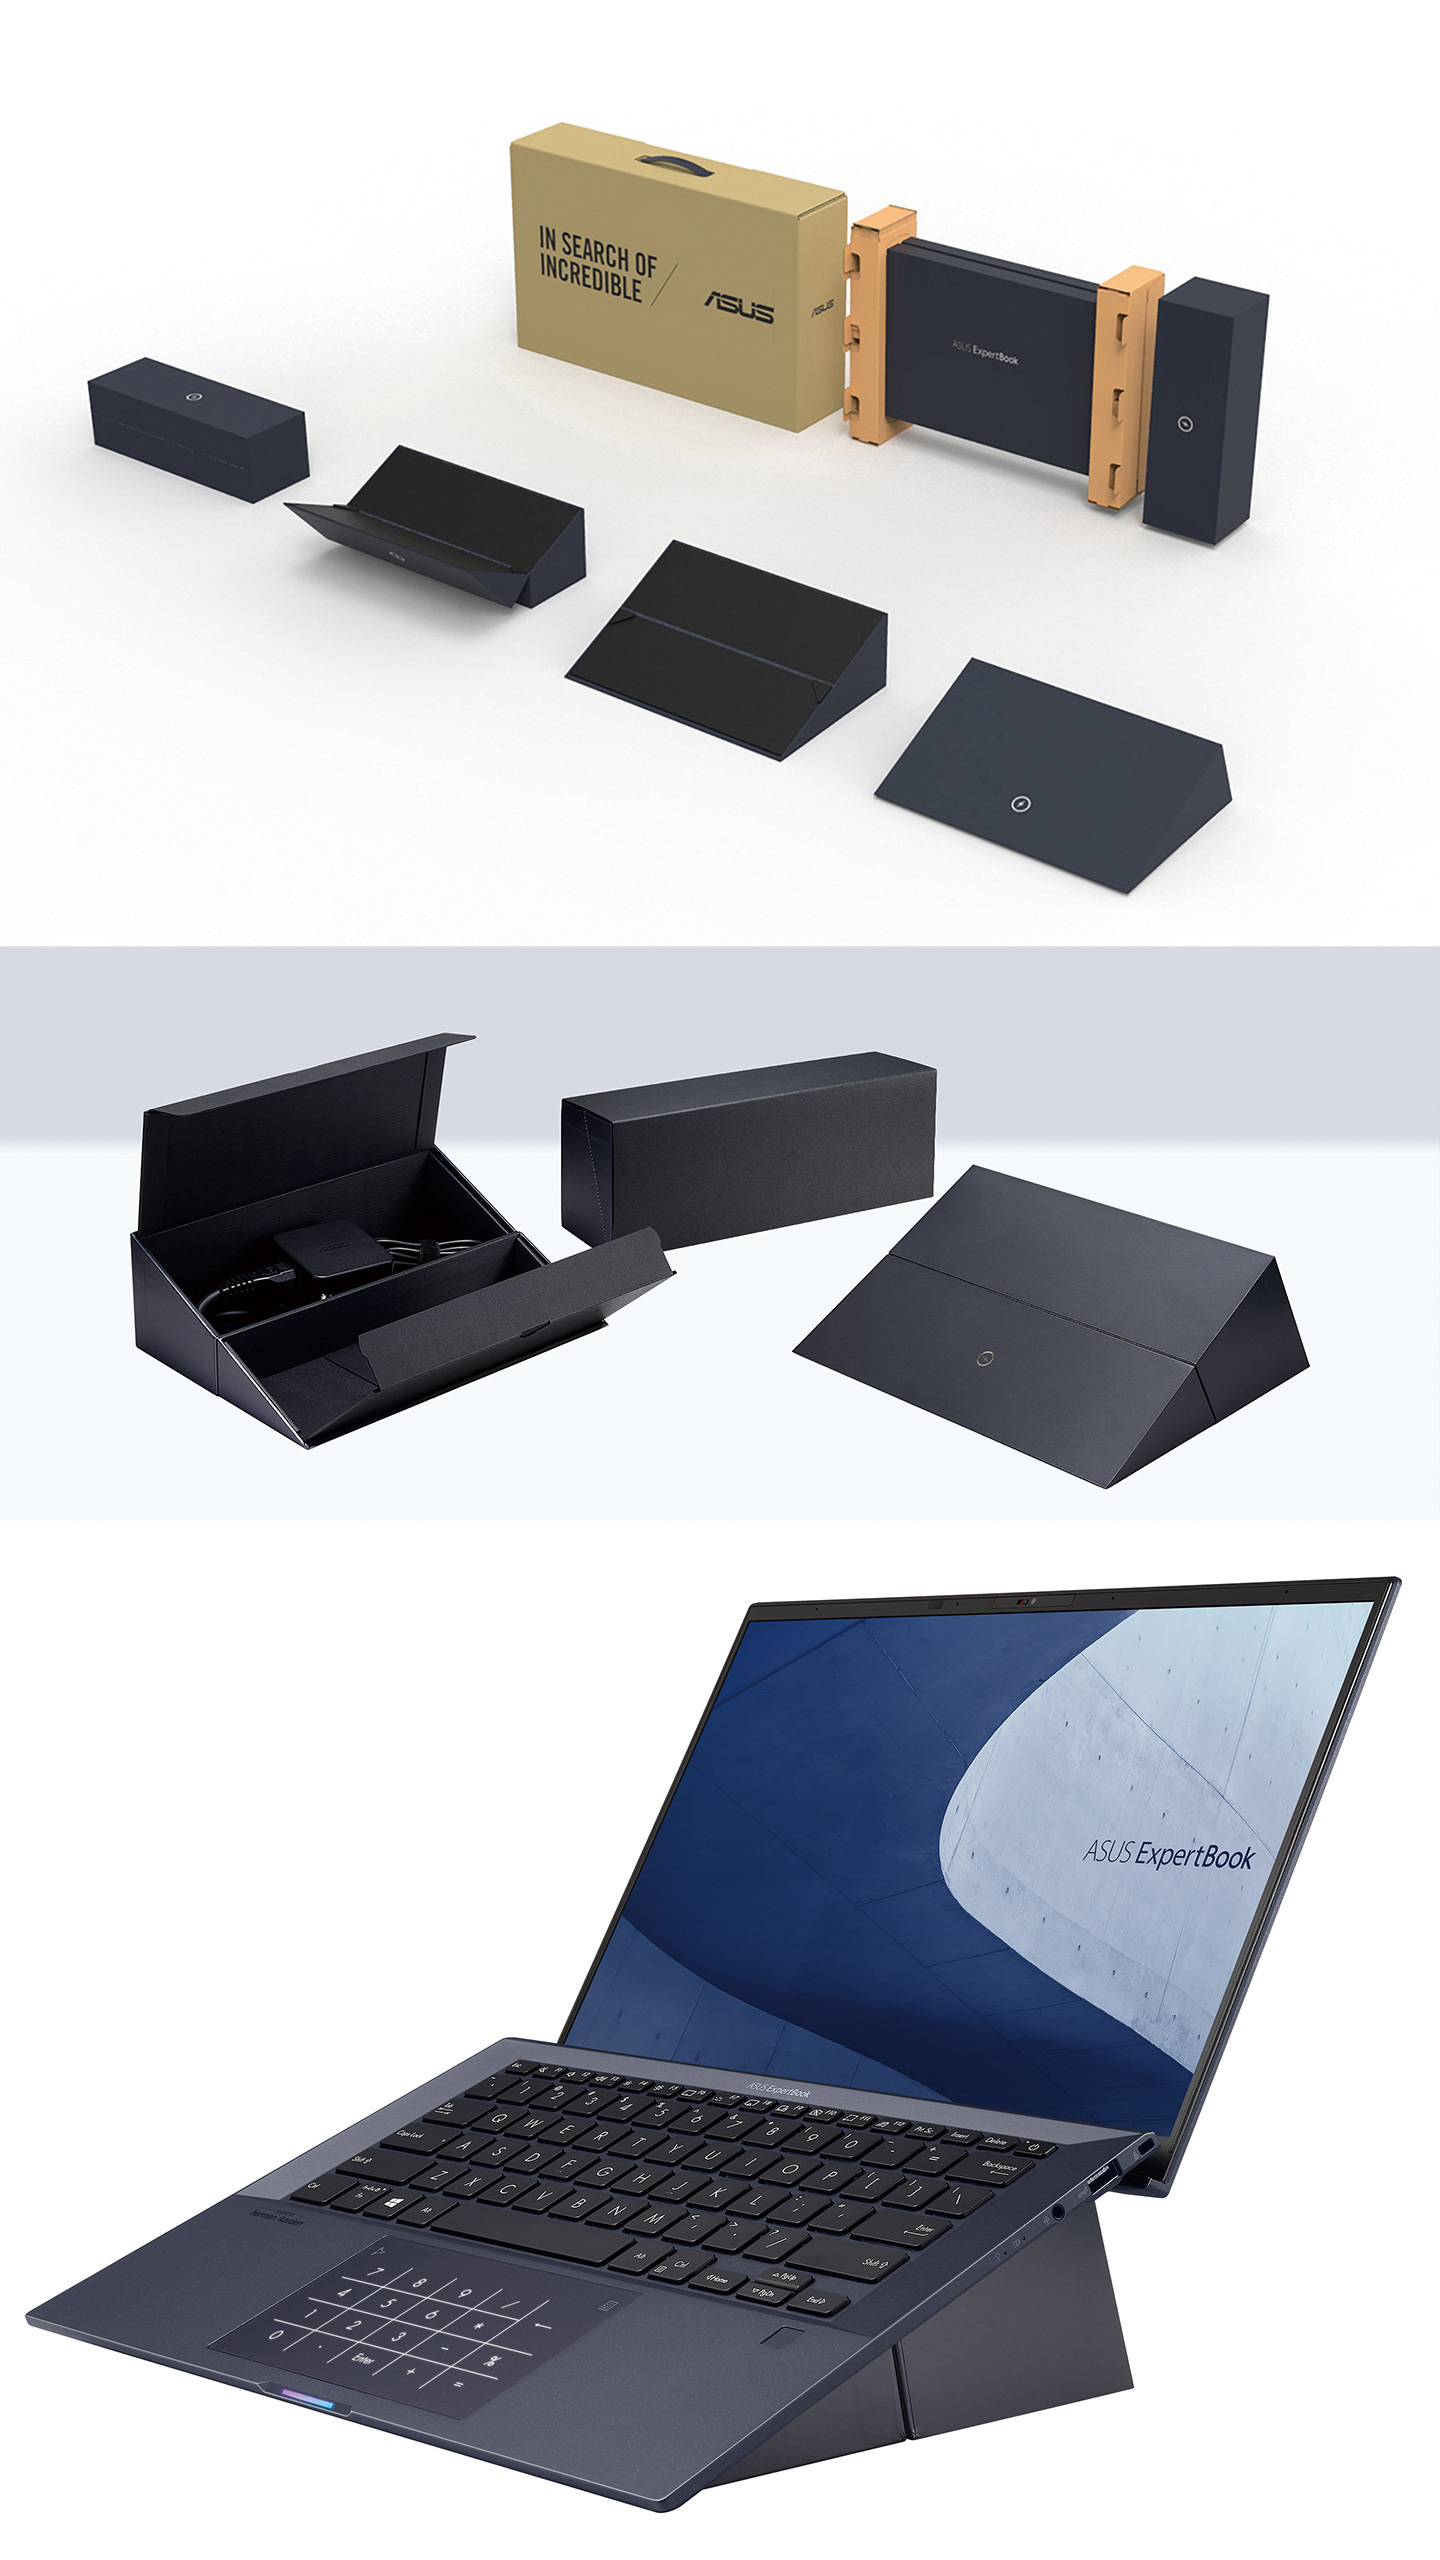 ASUS ExpertBook B9 Packaging